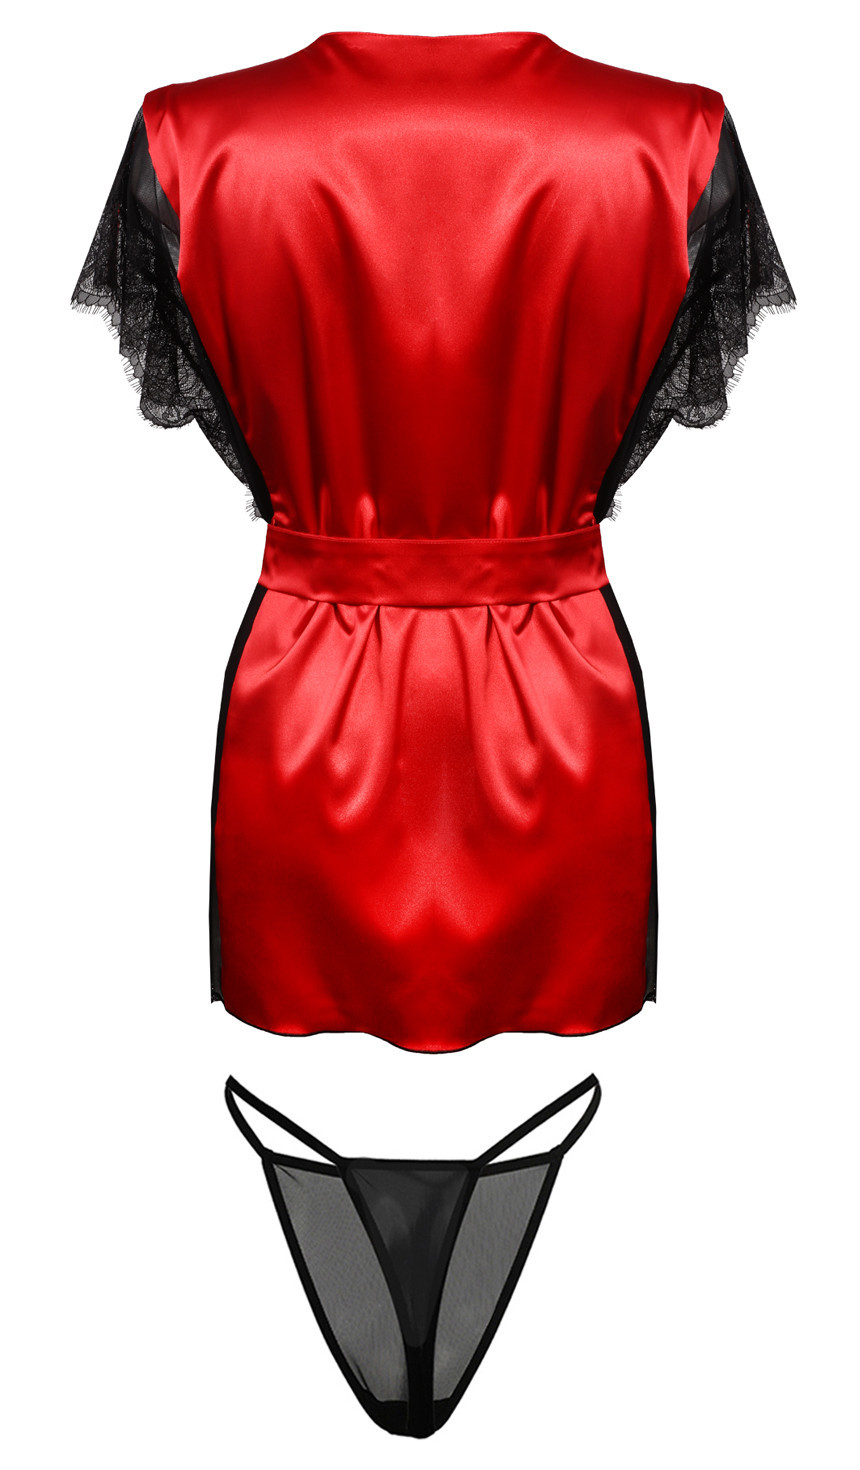 Housecoat model 18240905 Red L - DKaren